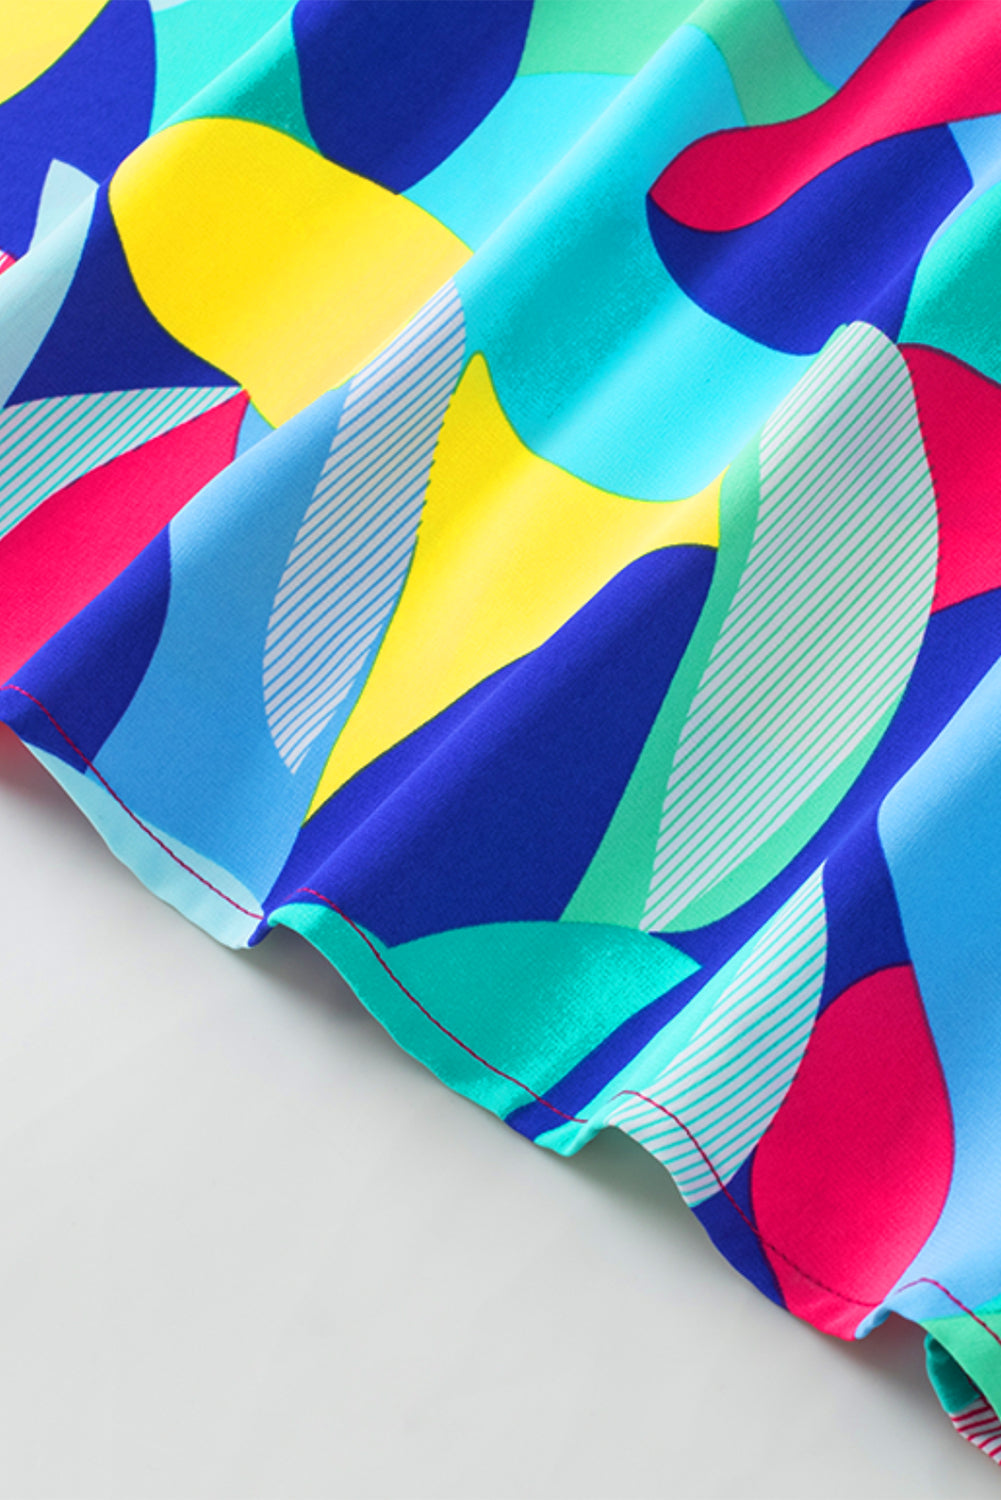 Gestreifte Bluse mit abstraktem Print, Nähten und Rüschenärmeln